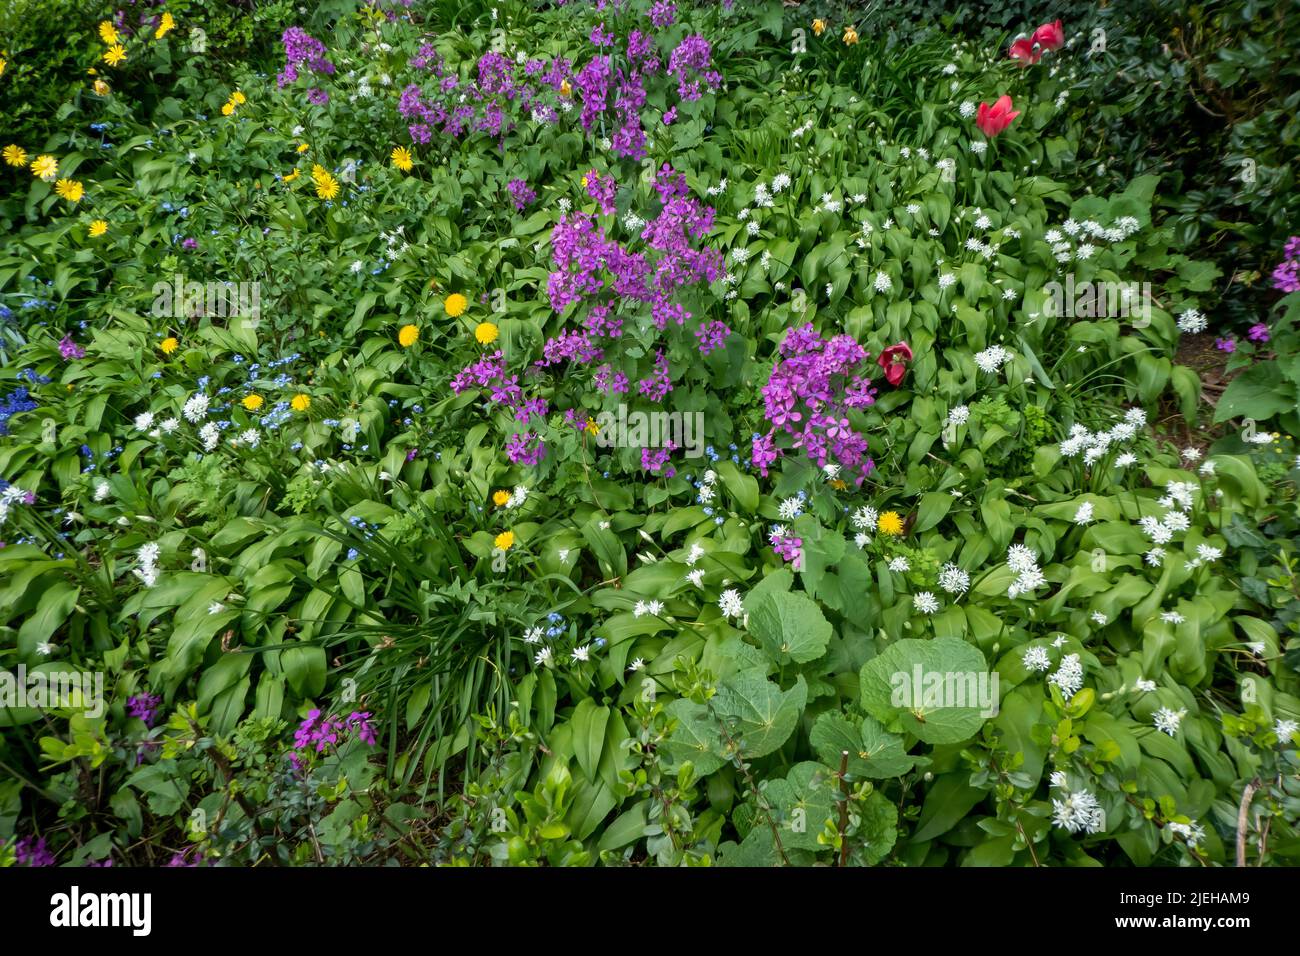 Blühender Vorgarten / flowering front garden Stock Photo